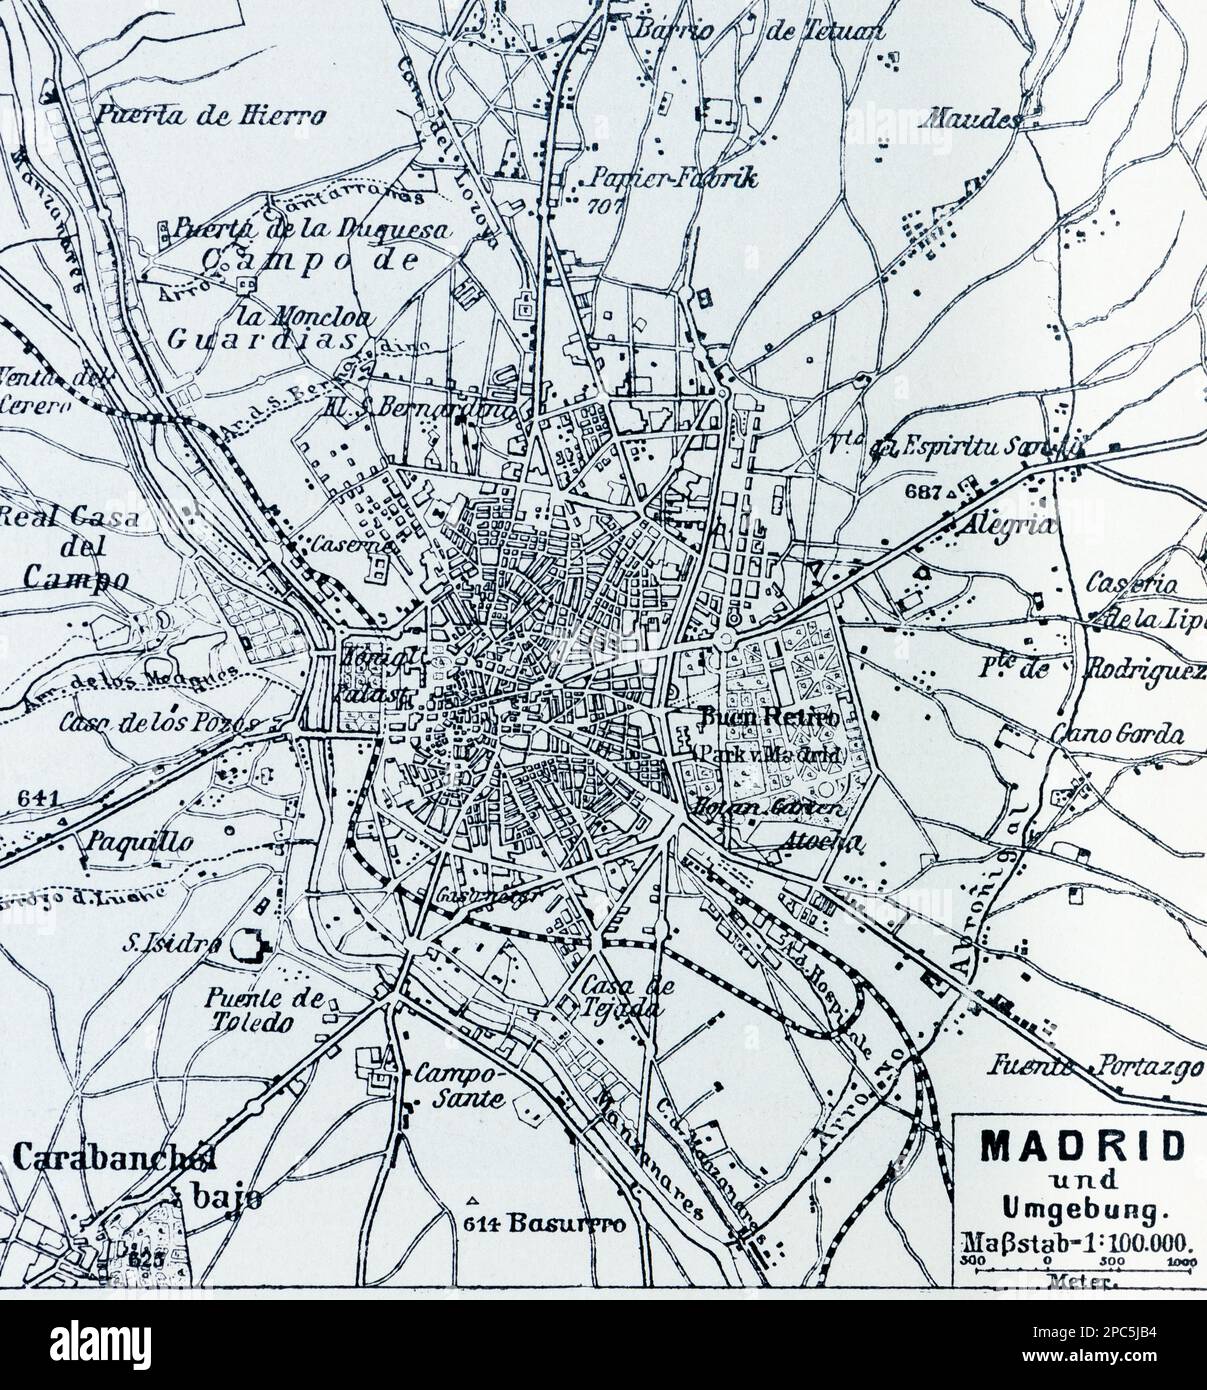 Mappa della città di Madrid e dintorni, Madrid, Spagna, Europa meridionale, illustrazione 1896 Foto Stock